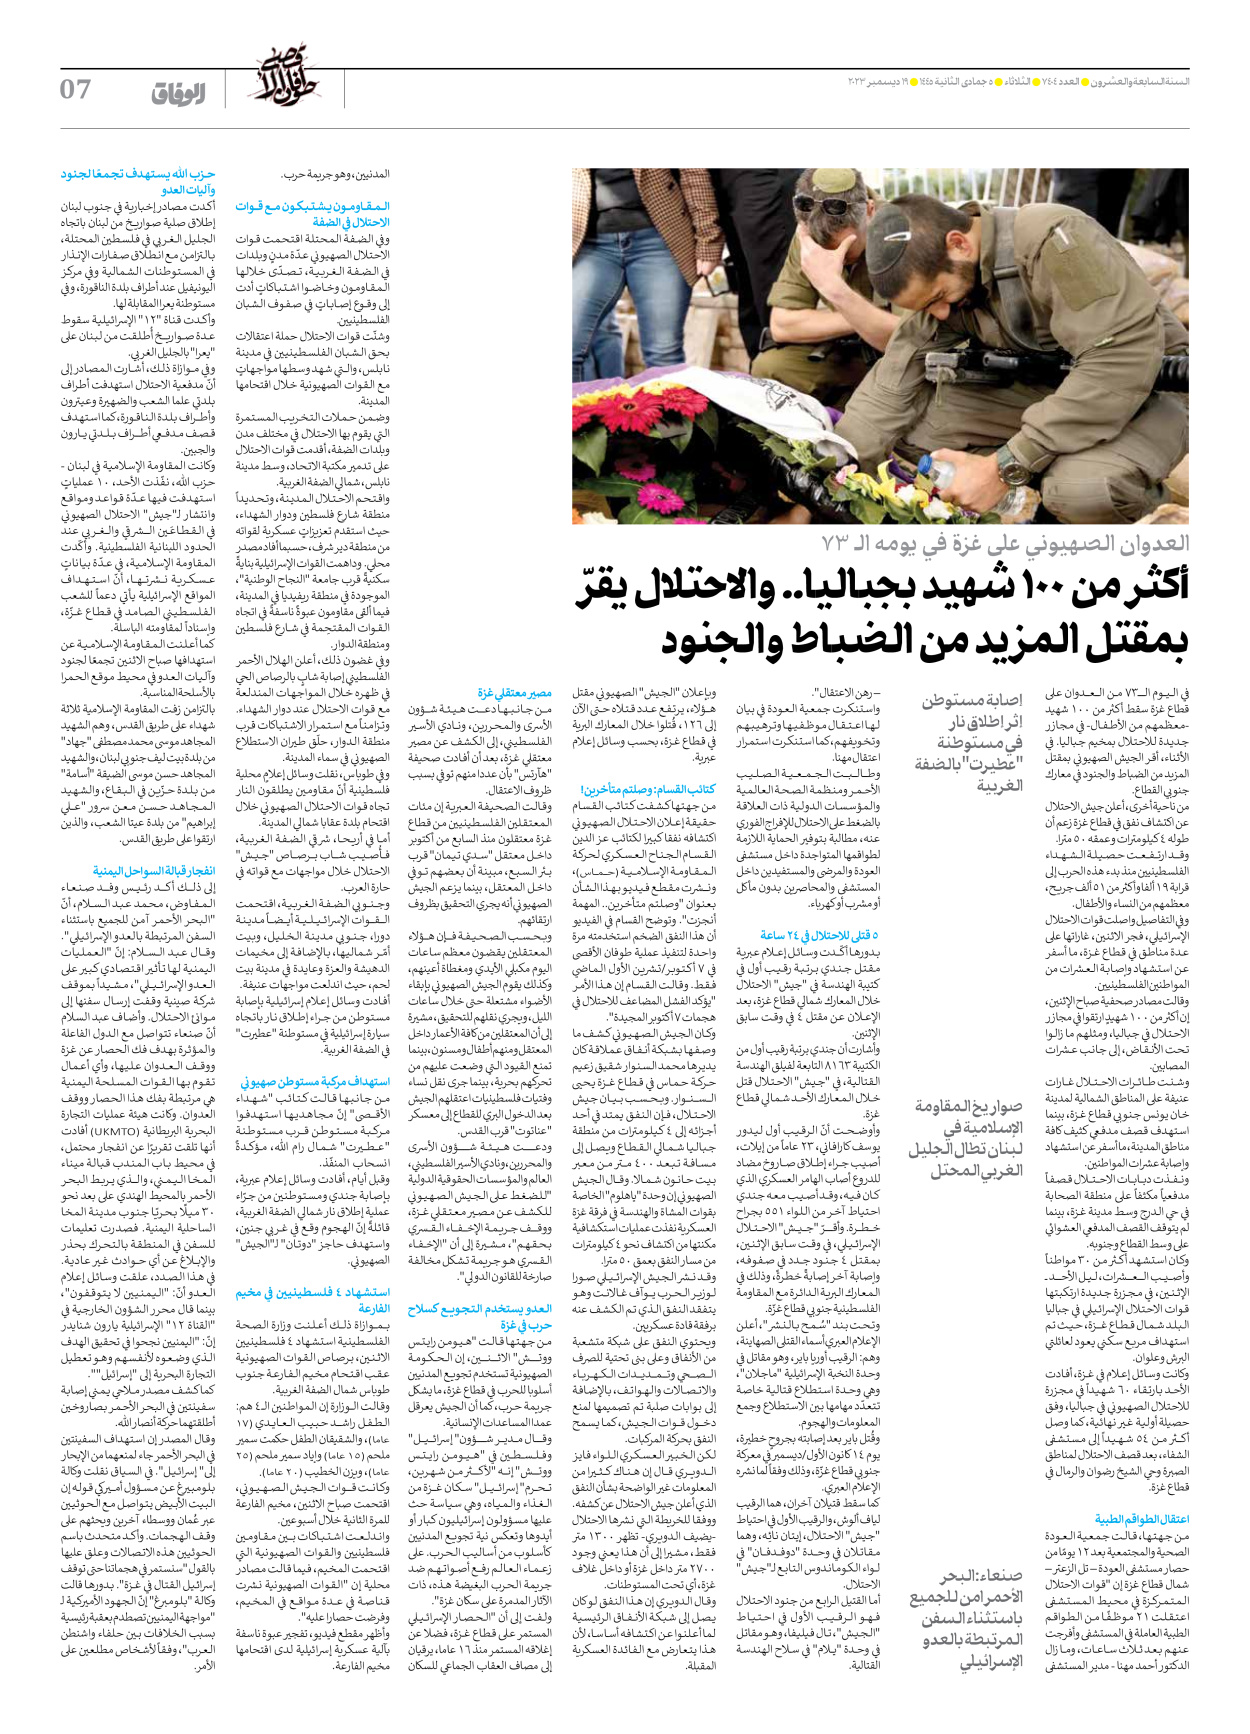 صحیفة ایران الدولیة الوفاق - العدد سبعة آلاف وأربعمائة وأربعة - ١٩ ديسمبر ٢٠٢٣ - الصفحة ۷